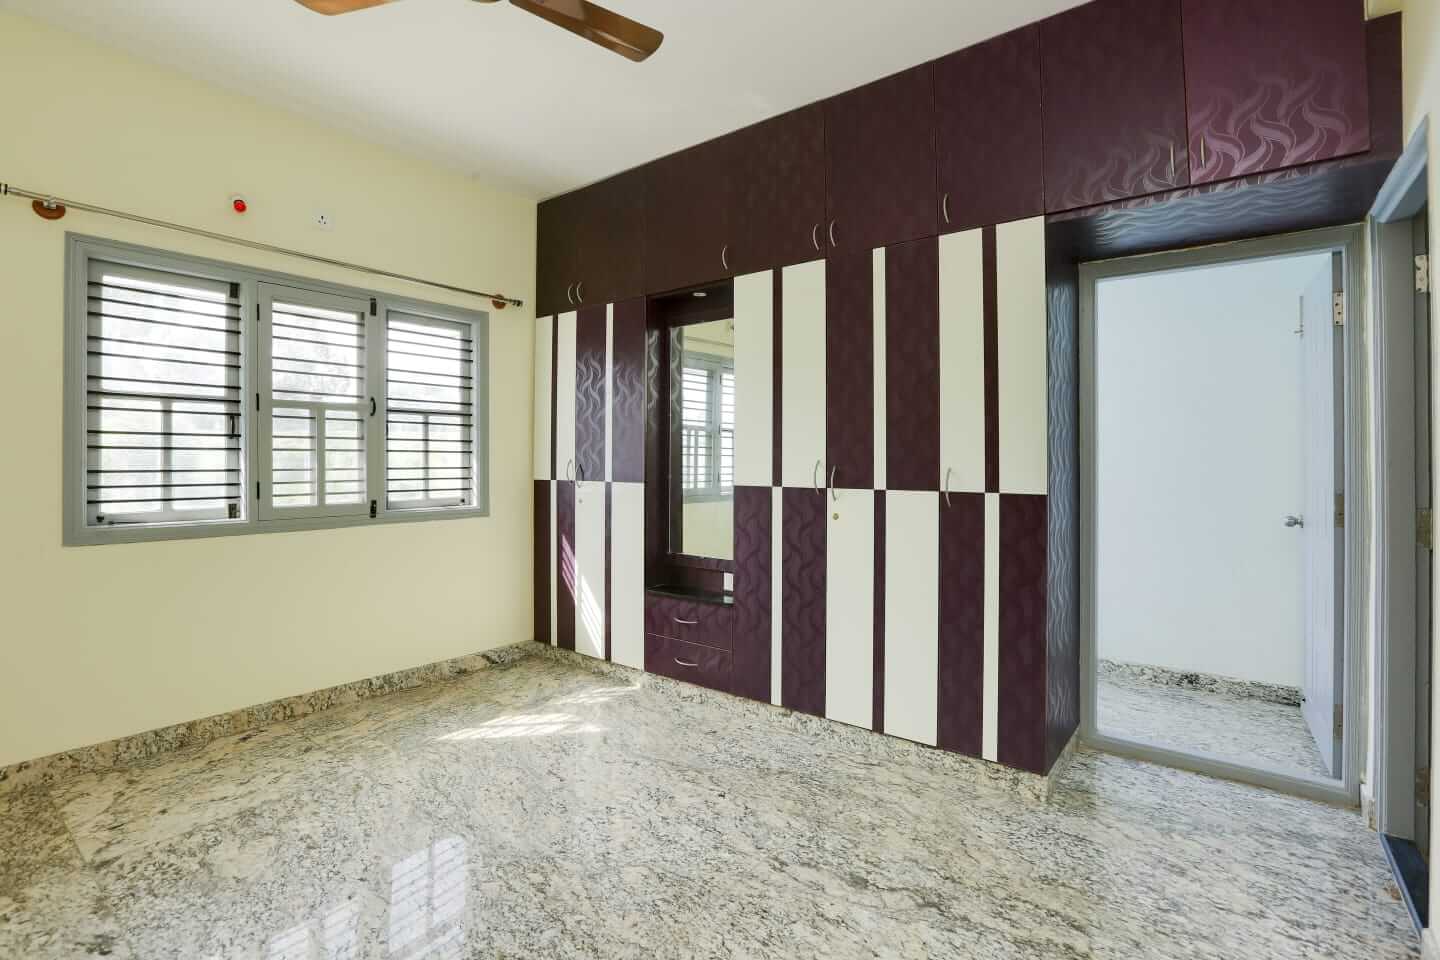 2 BHK Apartment / Flat for Sale 1260 Sq. Feet at Bangalore, Kaggadas Pura